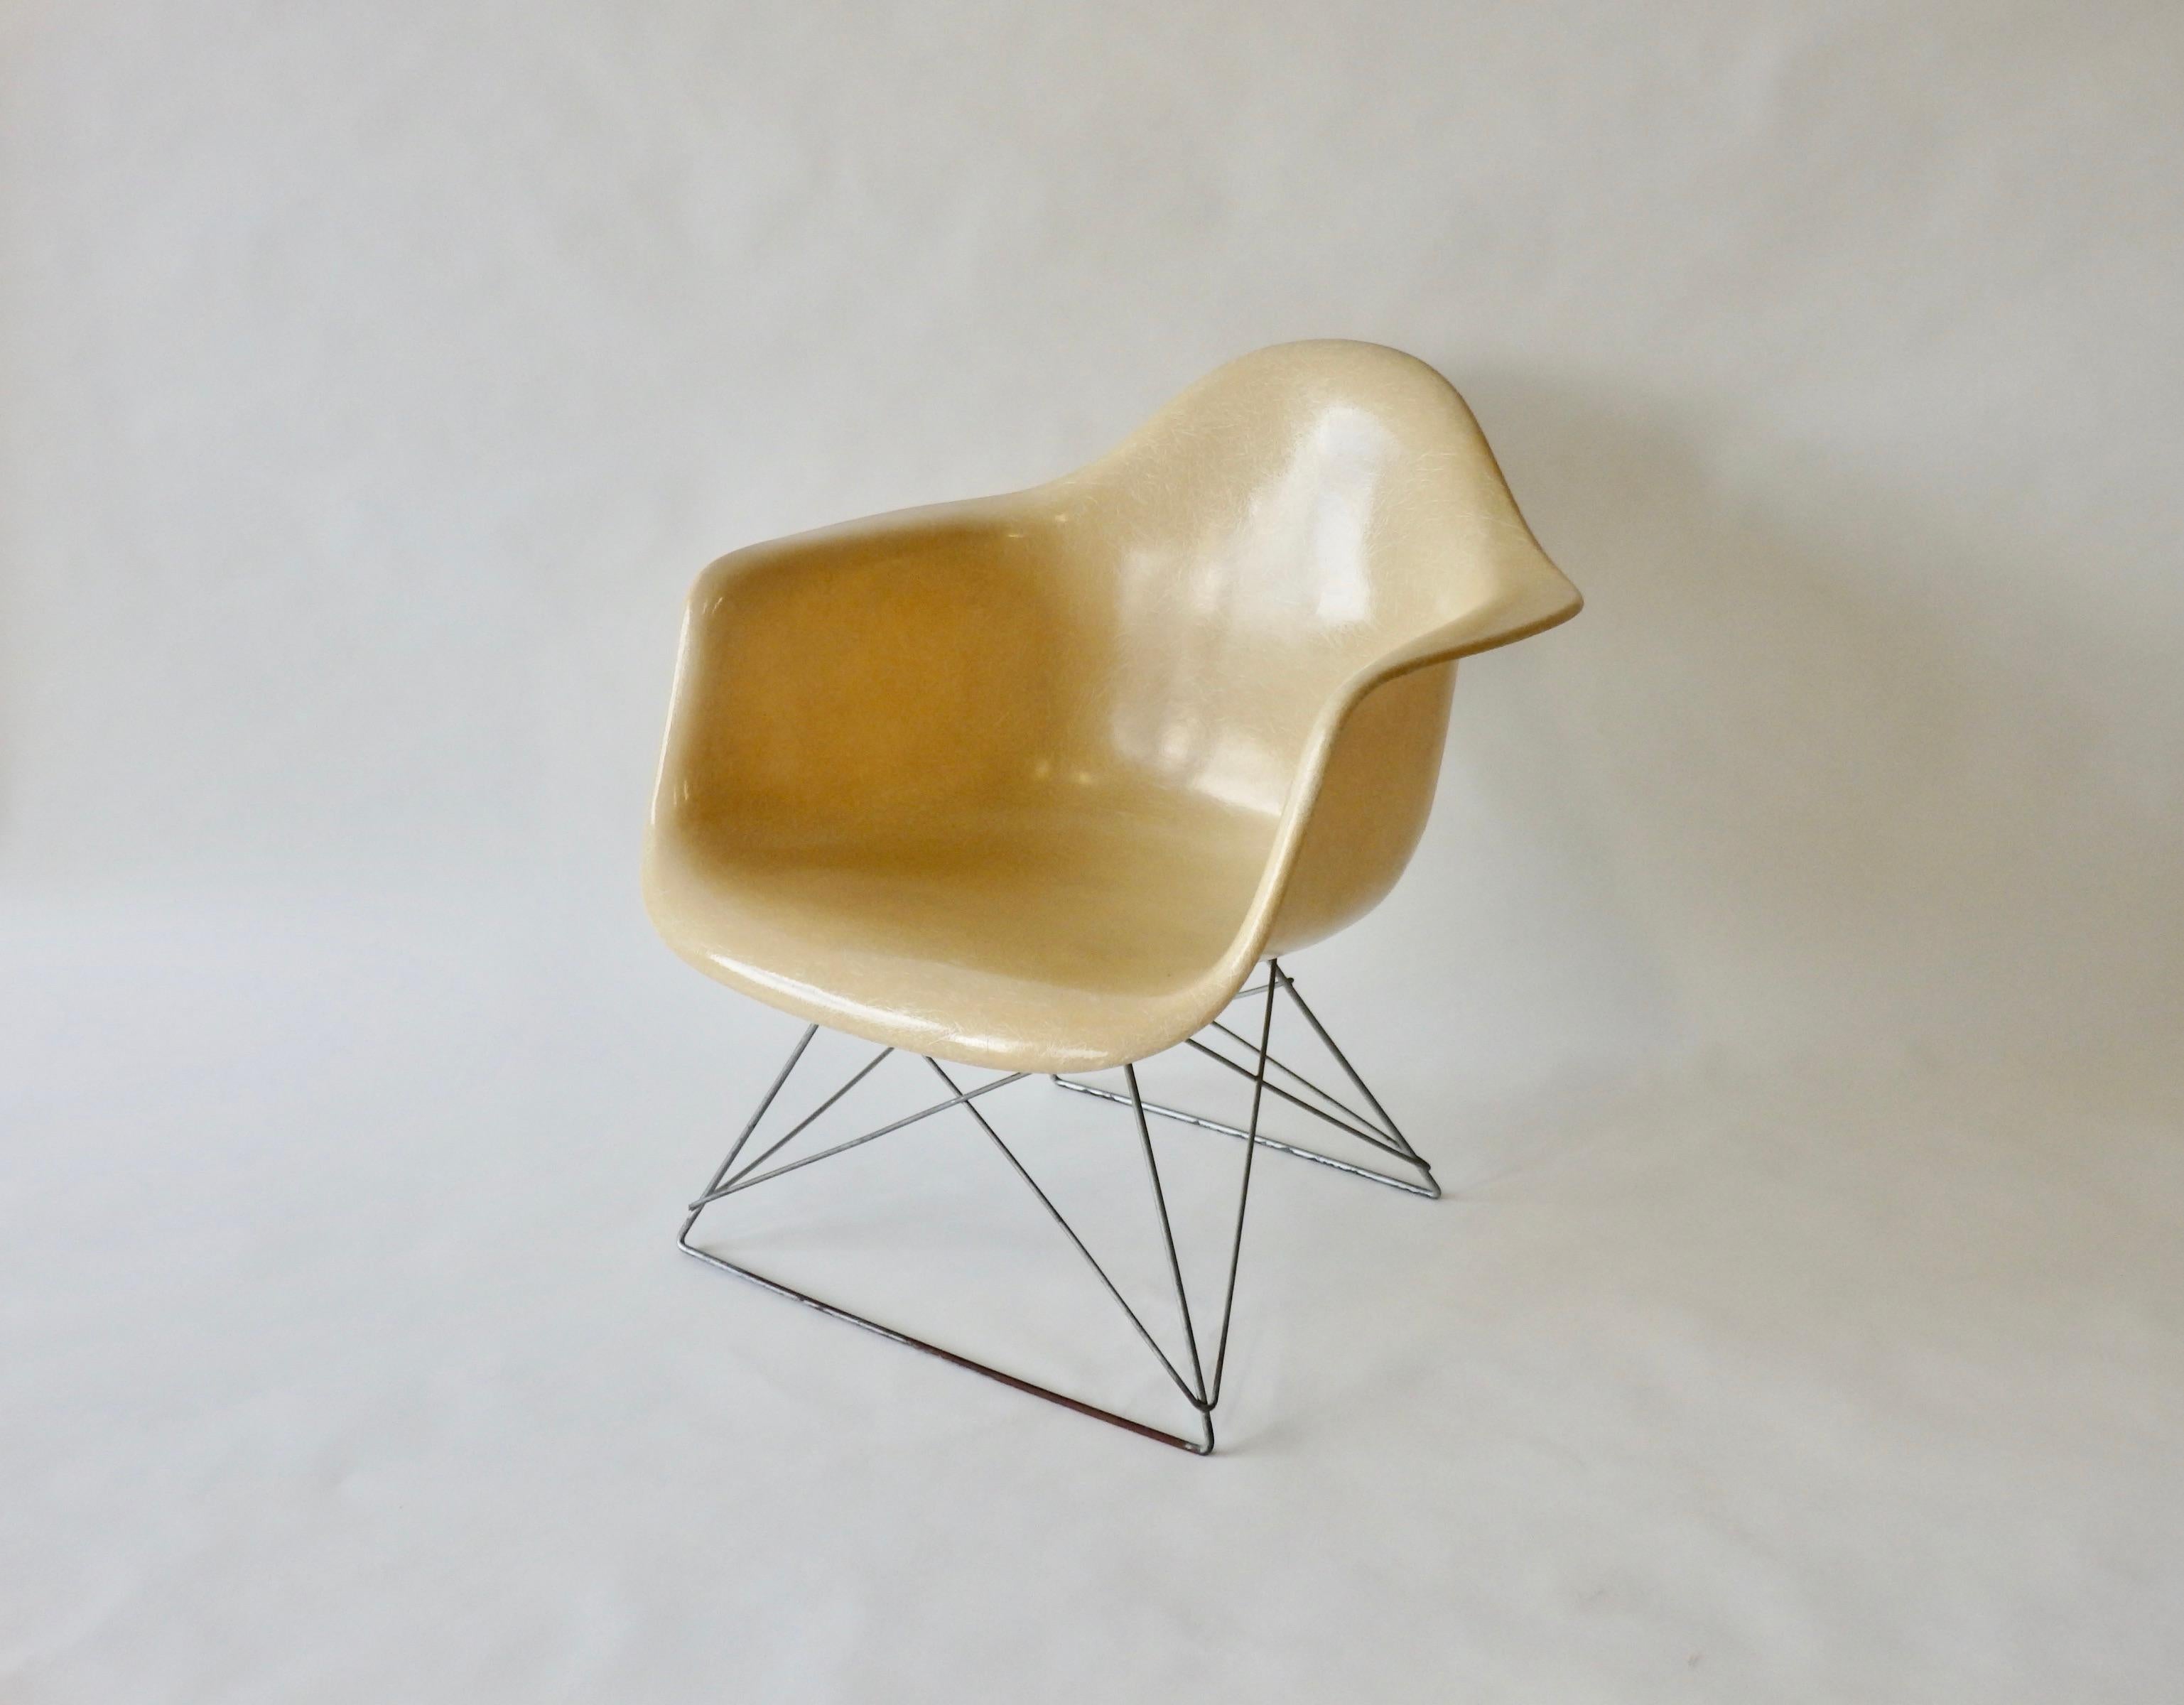 Aus der Serie der Fiberglas-Stühle, die Charles und Ray Eames unmittelbar nach dem Zweiten Weltkrieg entwickelt haben. Weit verbreitet durch Herman Miller. Dieser Stuhl mit niedriger Armlehne (LAR) hat ein verzinktes Untergestell mit einer Armlehne